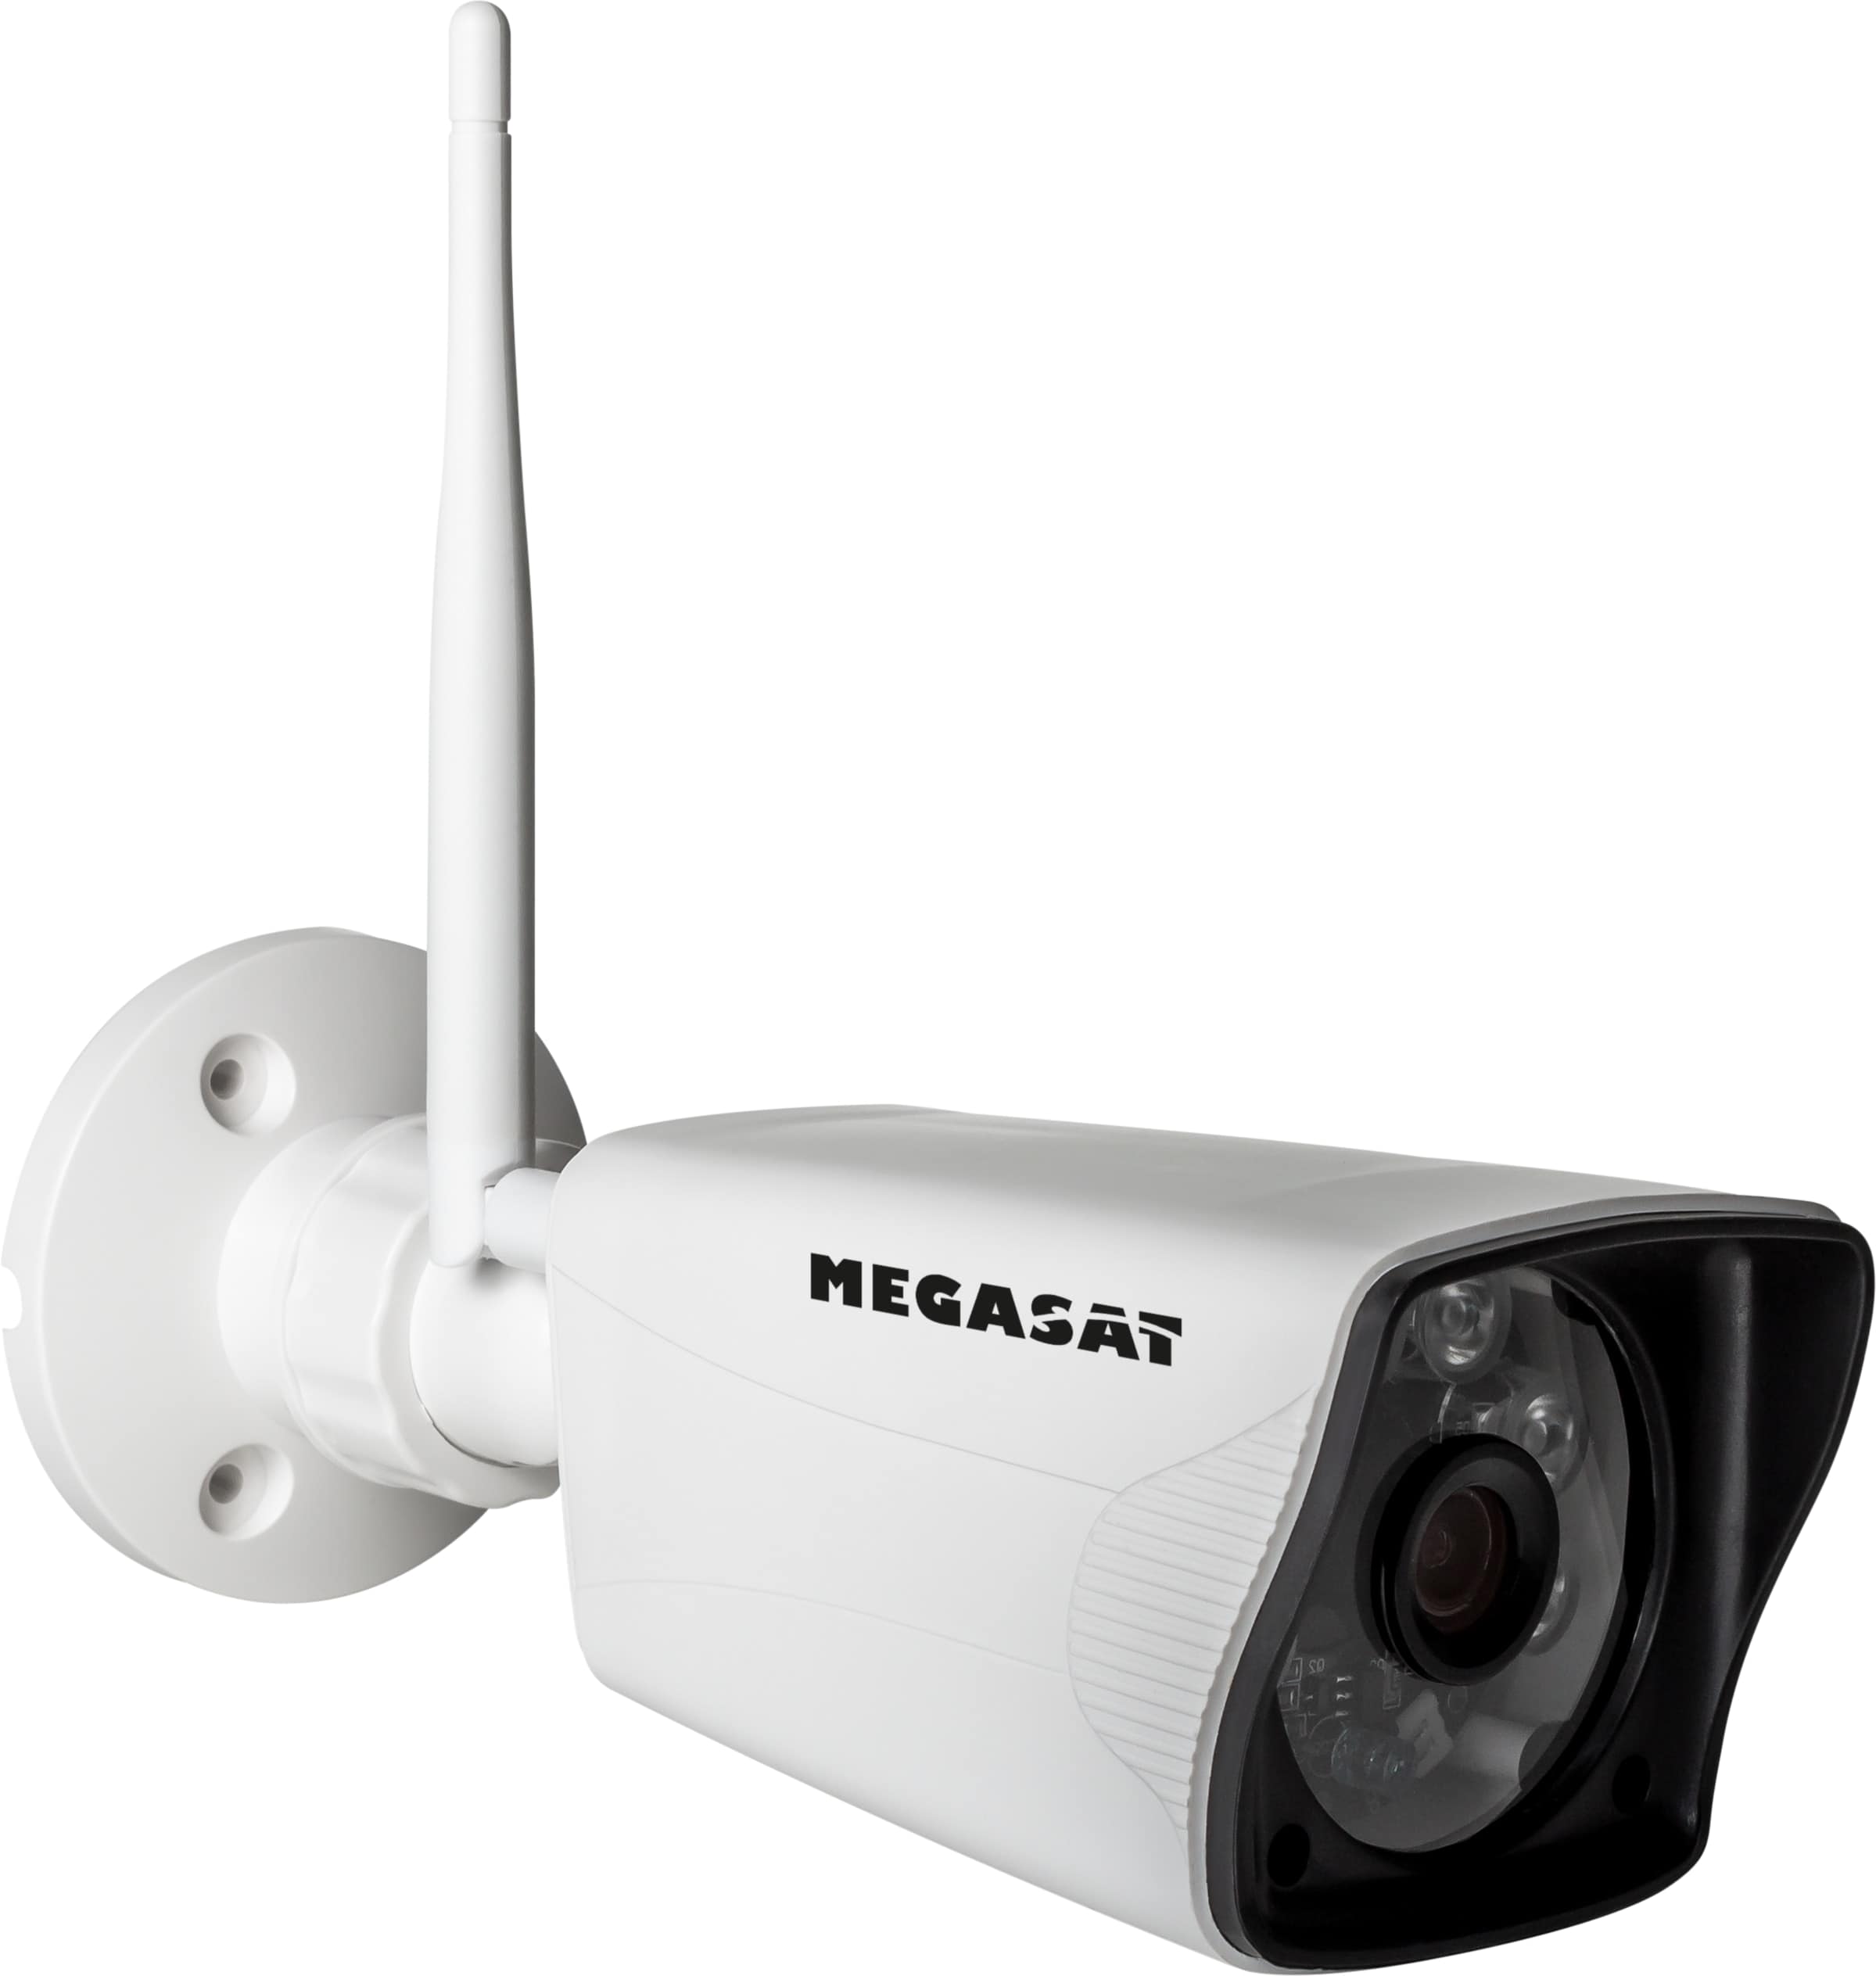 MEGASAT IP-Kamera HS 30, Zusatzkamera für Überwachungs-Set HS 130